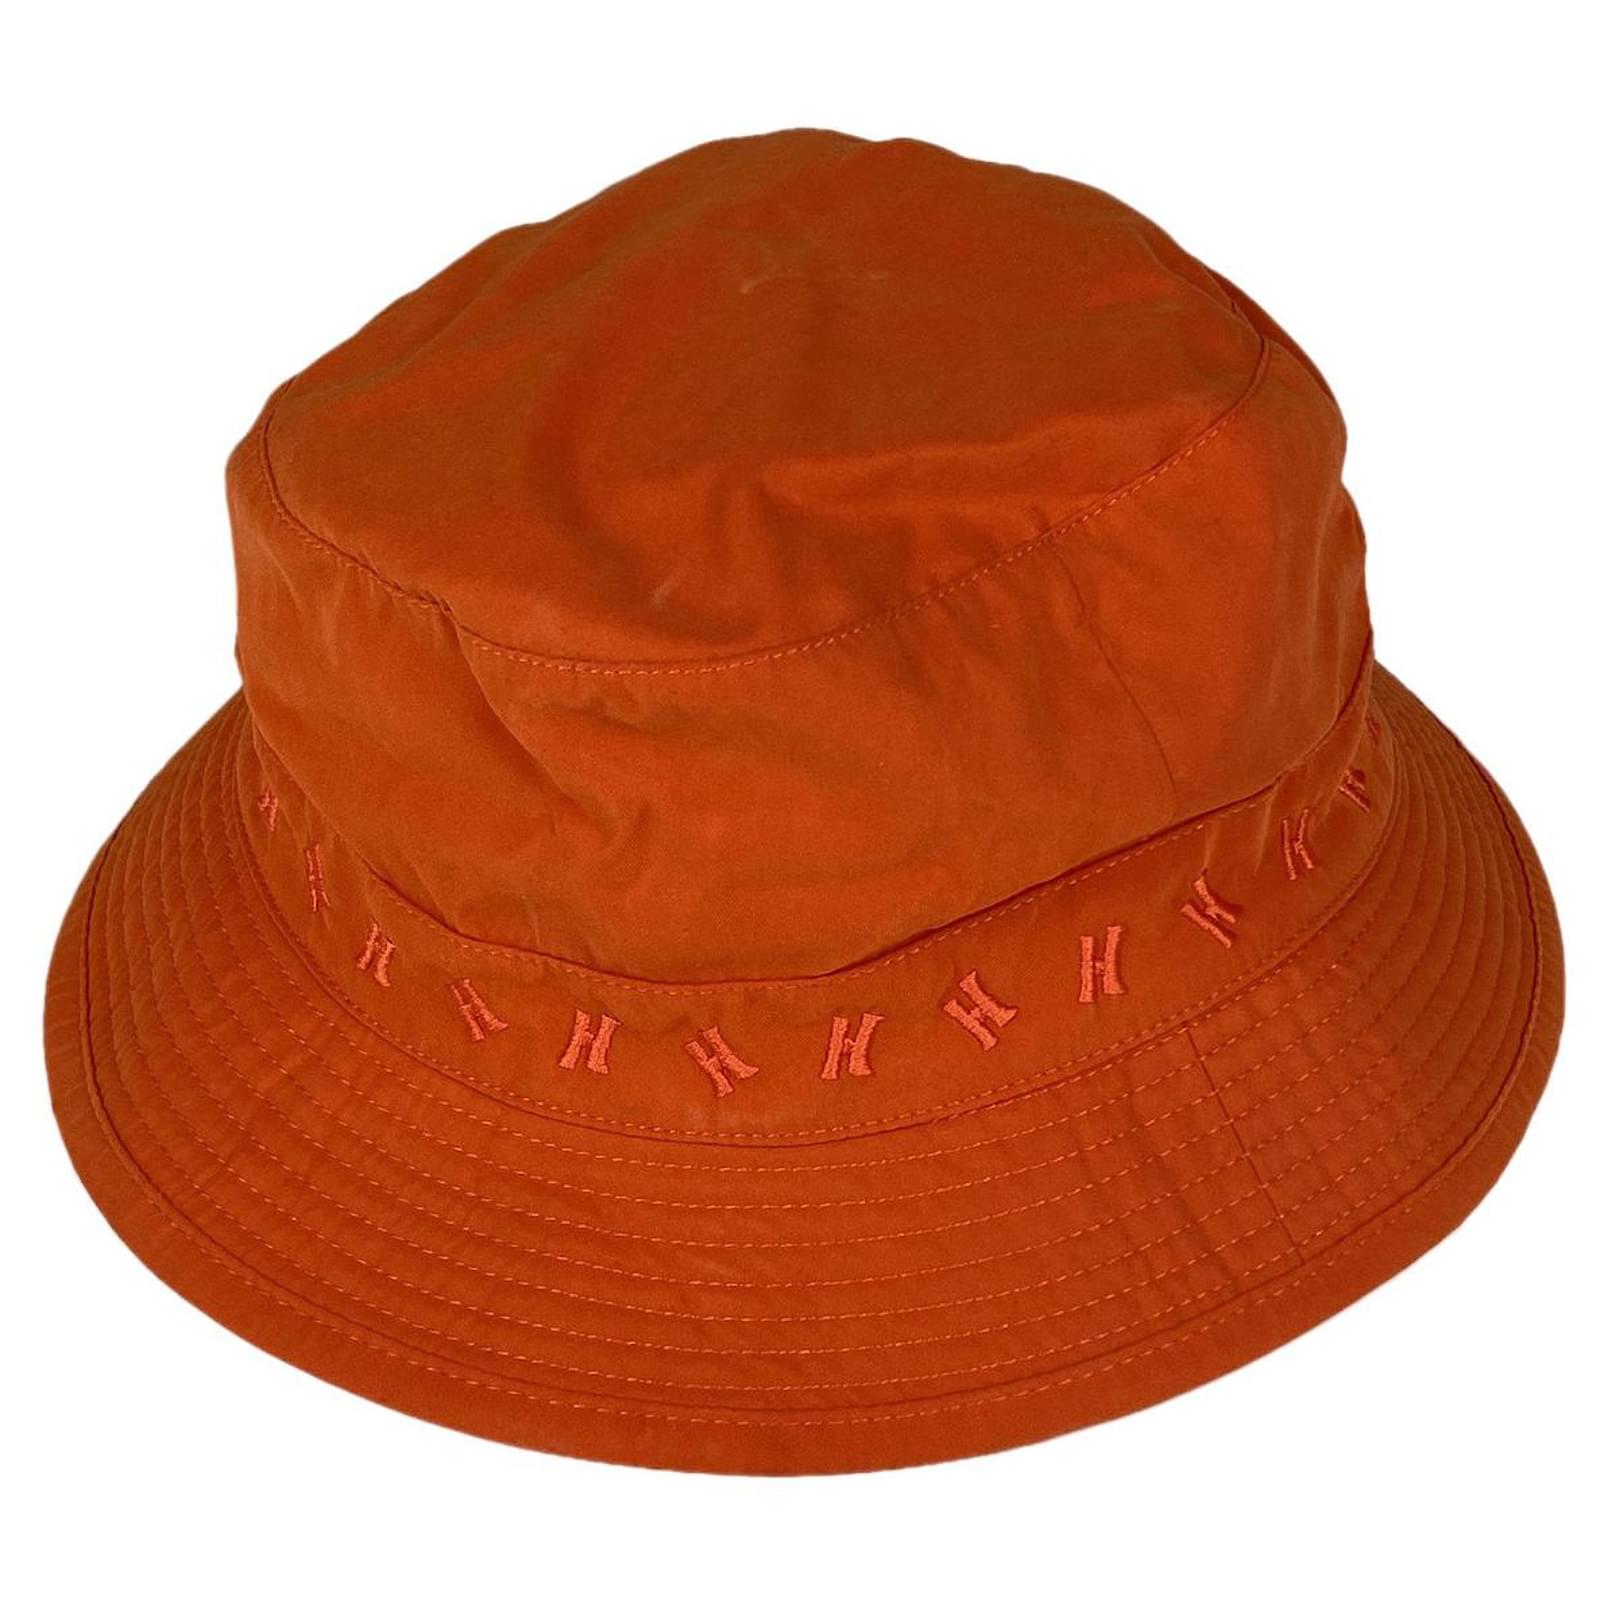 Hermès [Used] Hermes bucket hat H logo hat polyester orange ladies ref ...